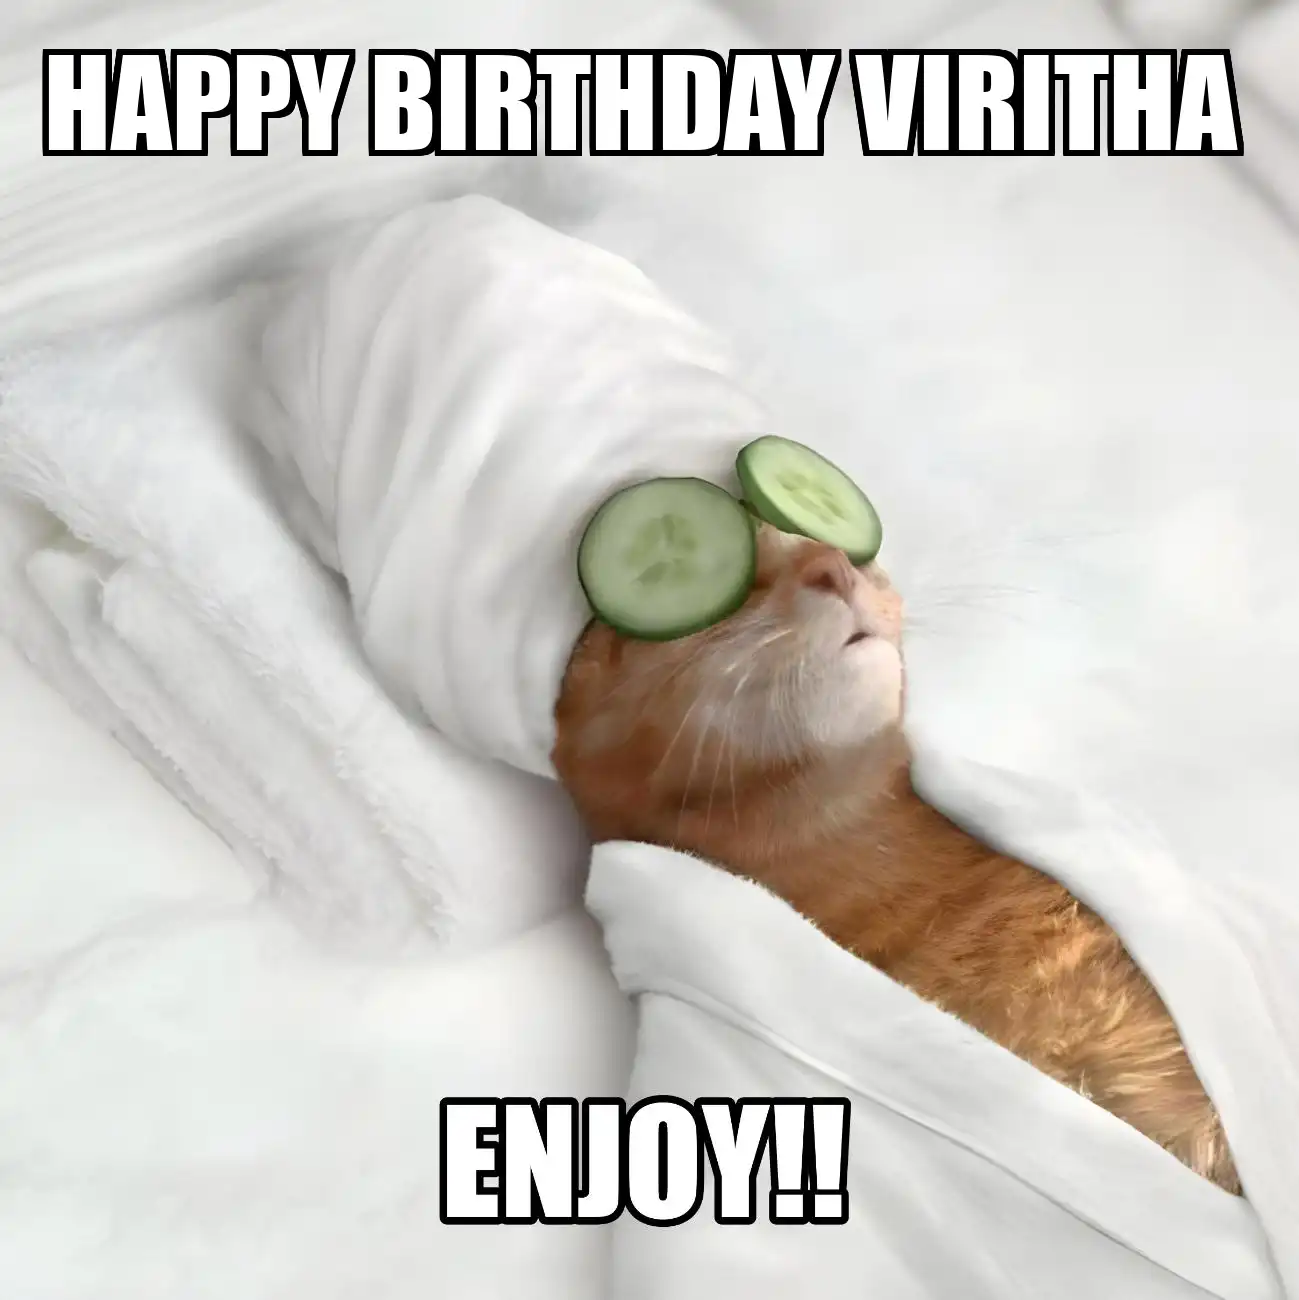 Happy Birthday Viritha Enjoy Cat Meme